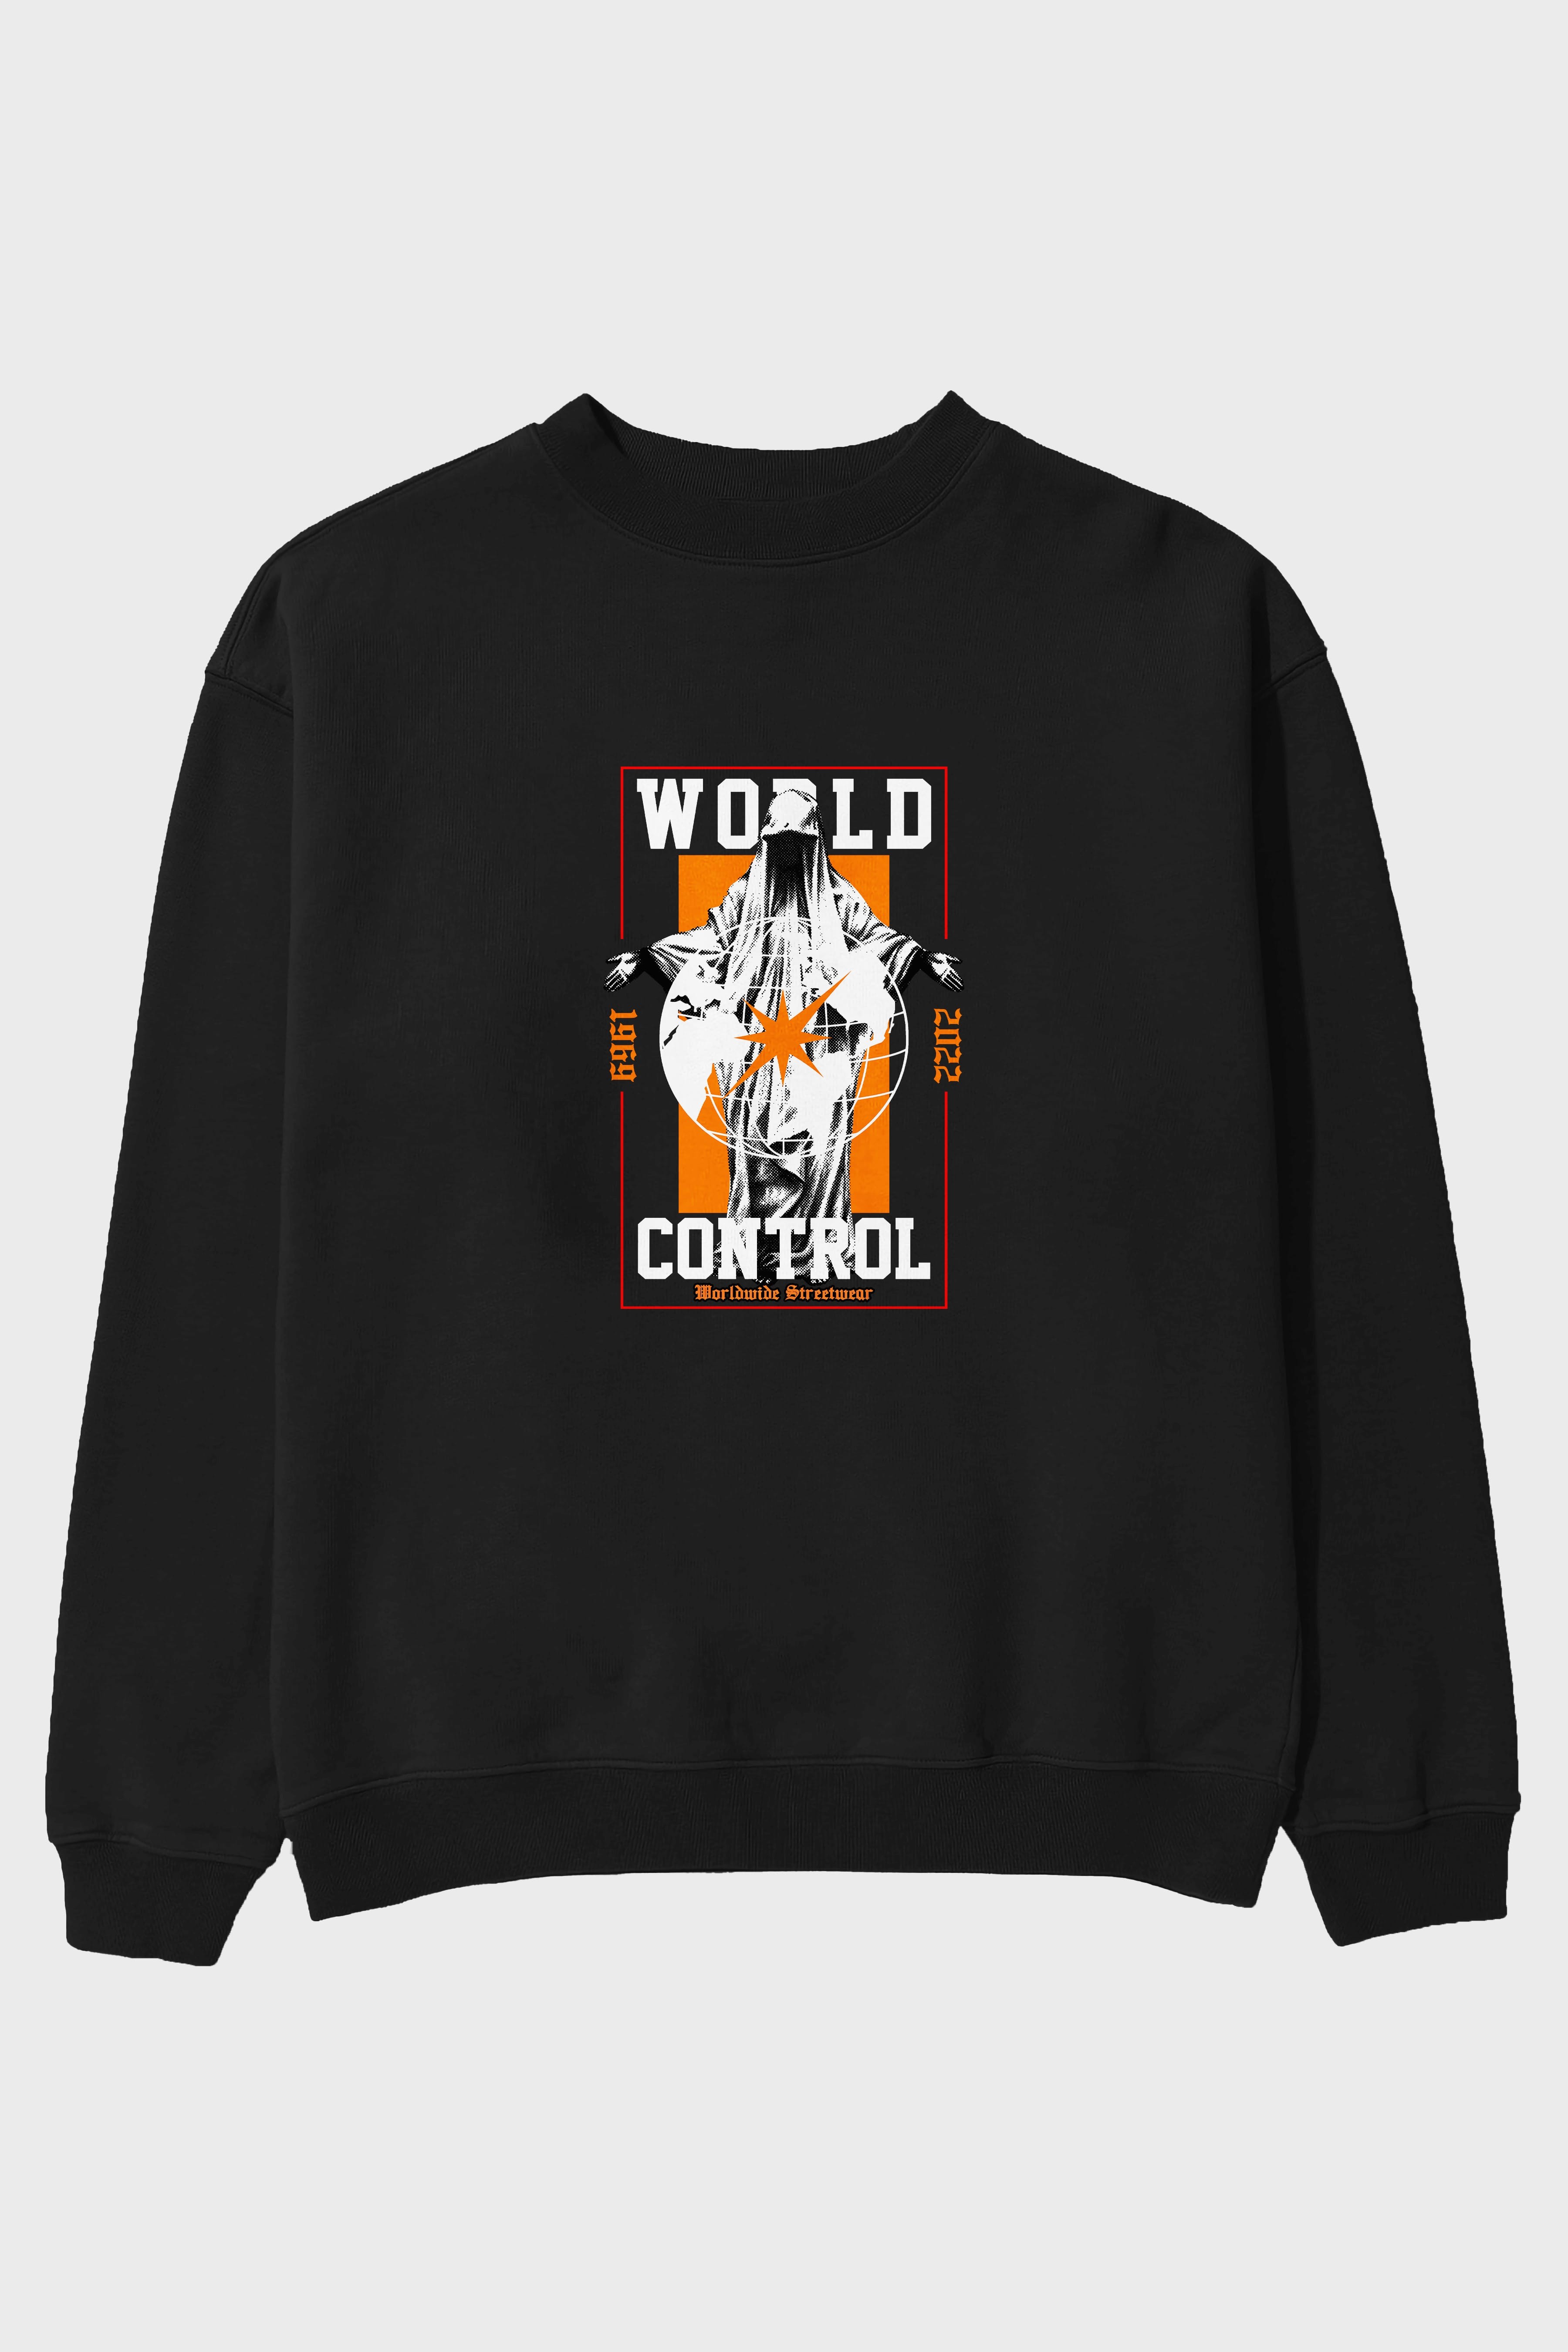 World Control Ön Baskılı Oversize Sweatshirt Erkek Kadın Unisex